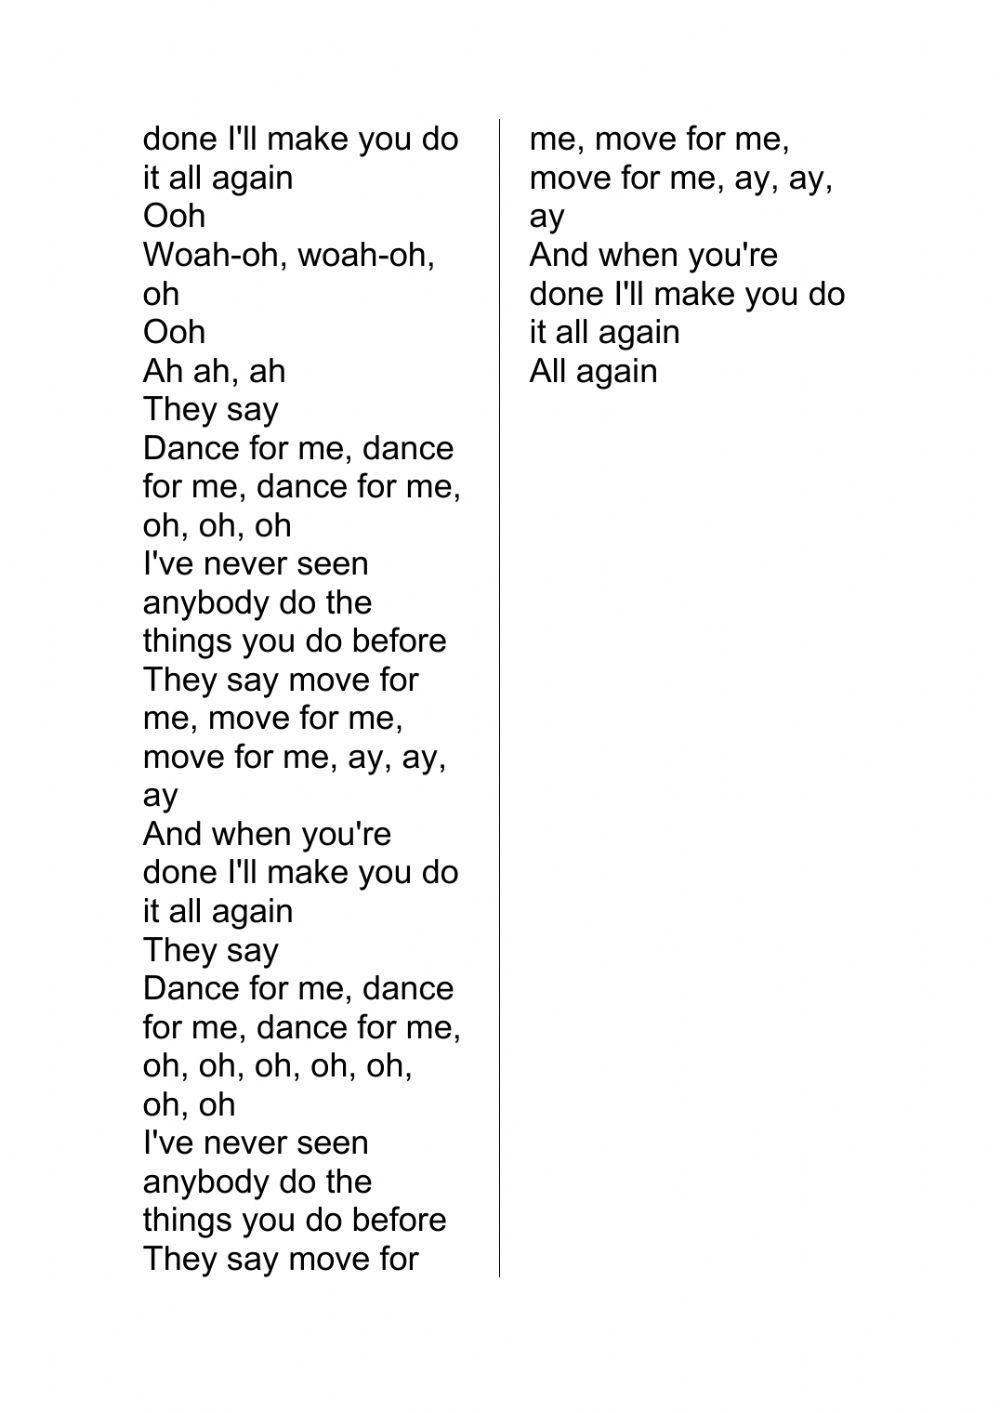 Dance Monkey Lyrics